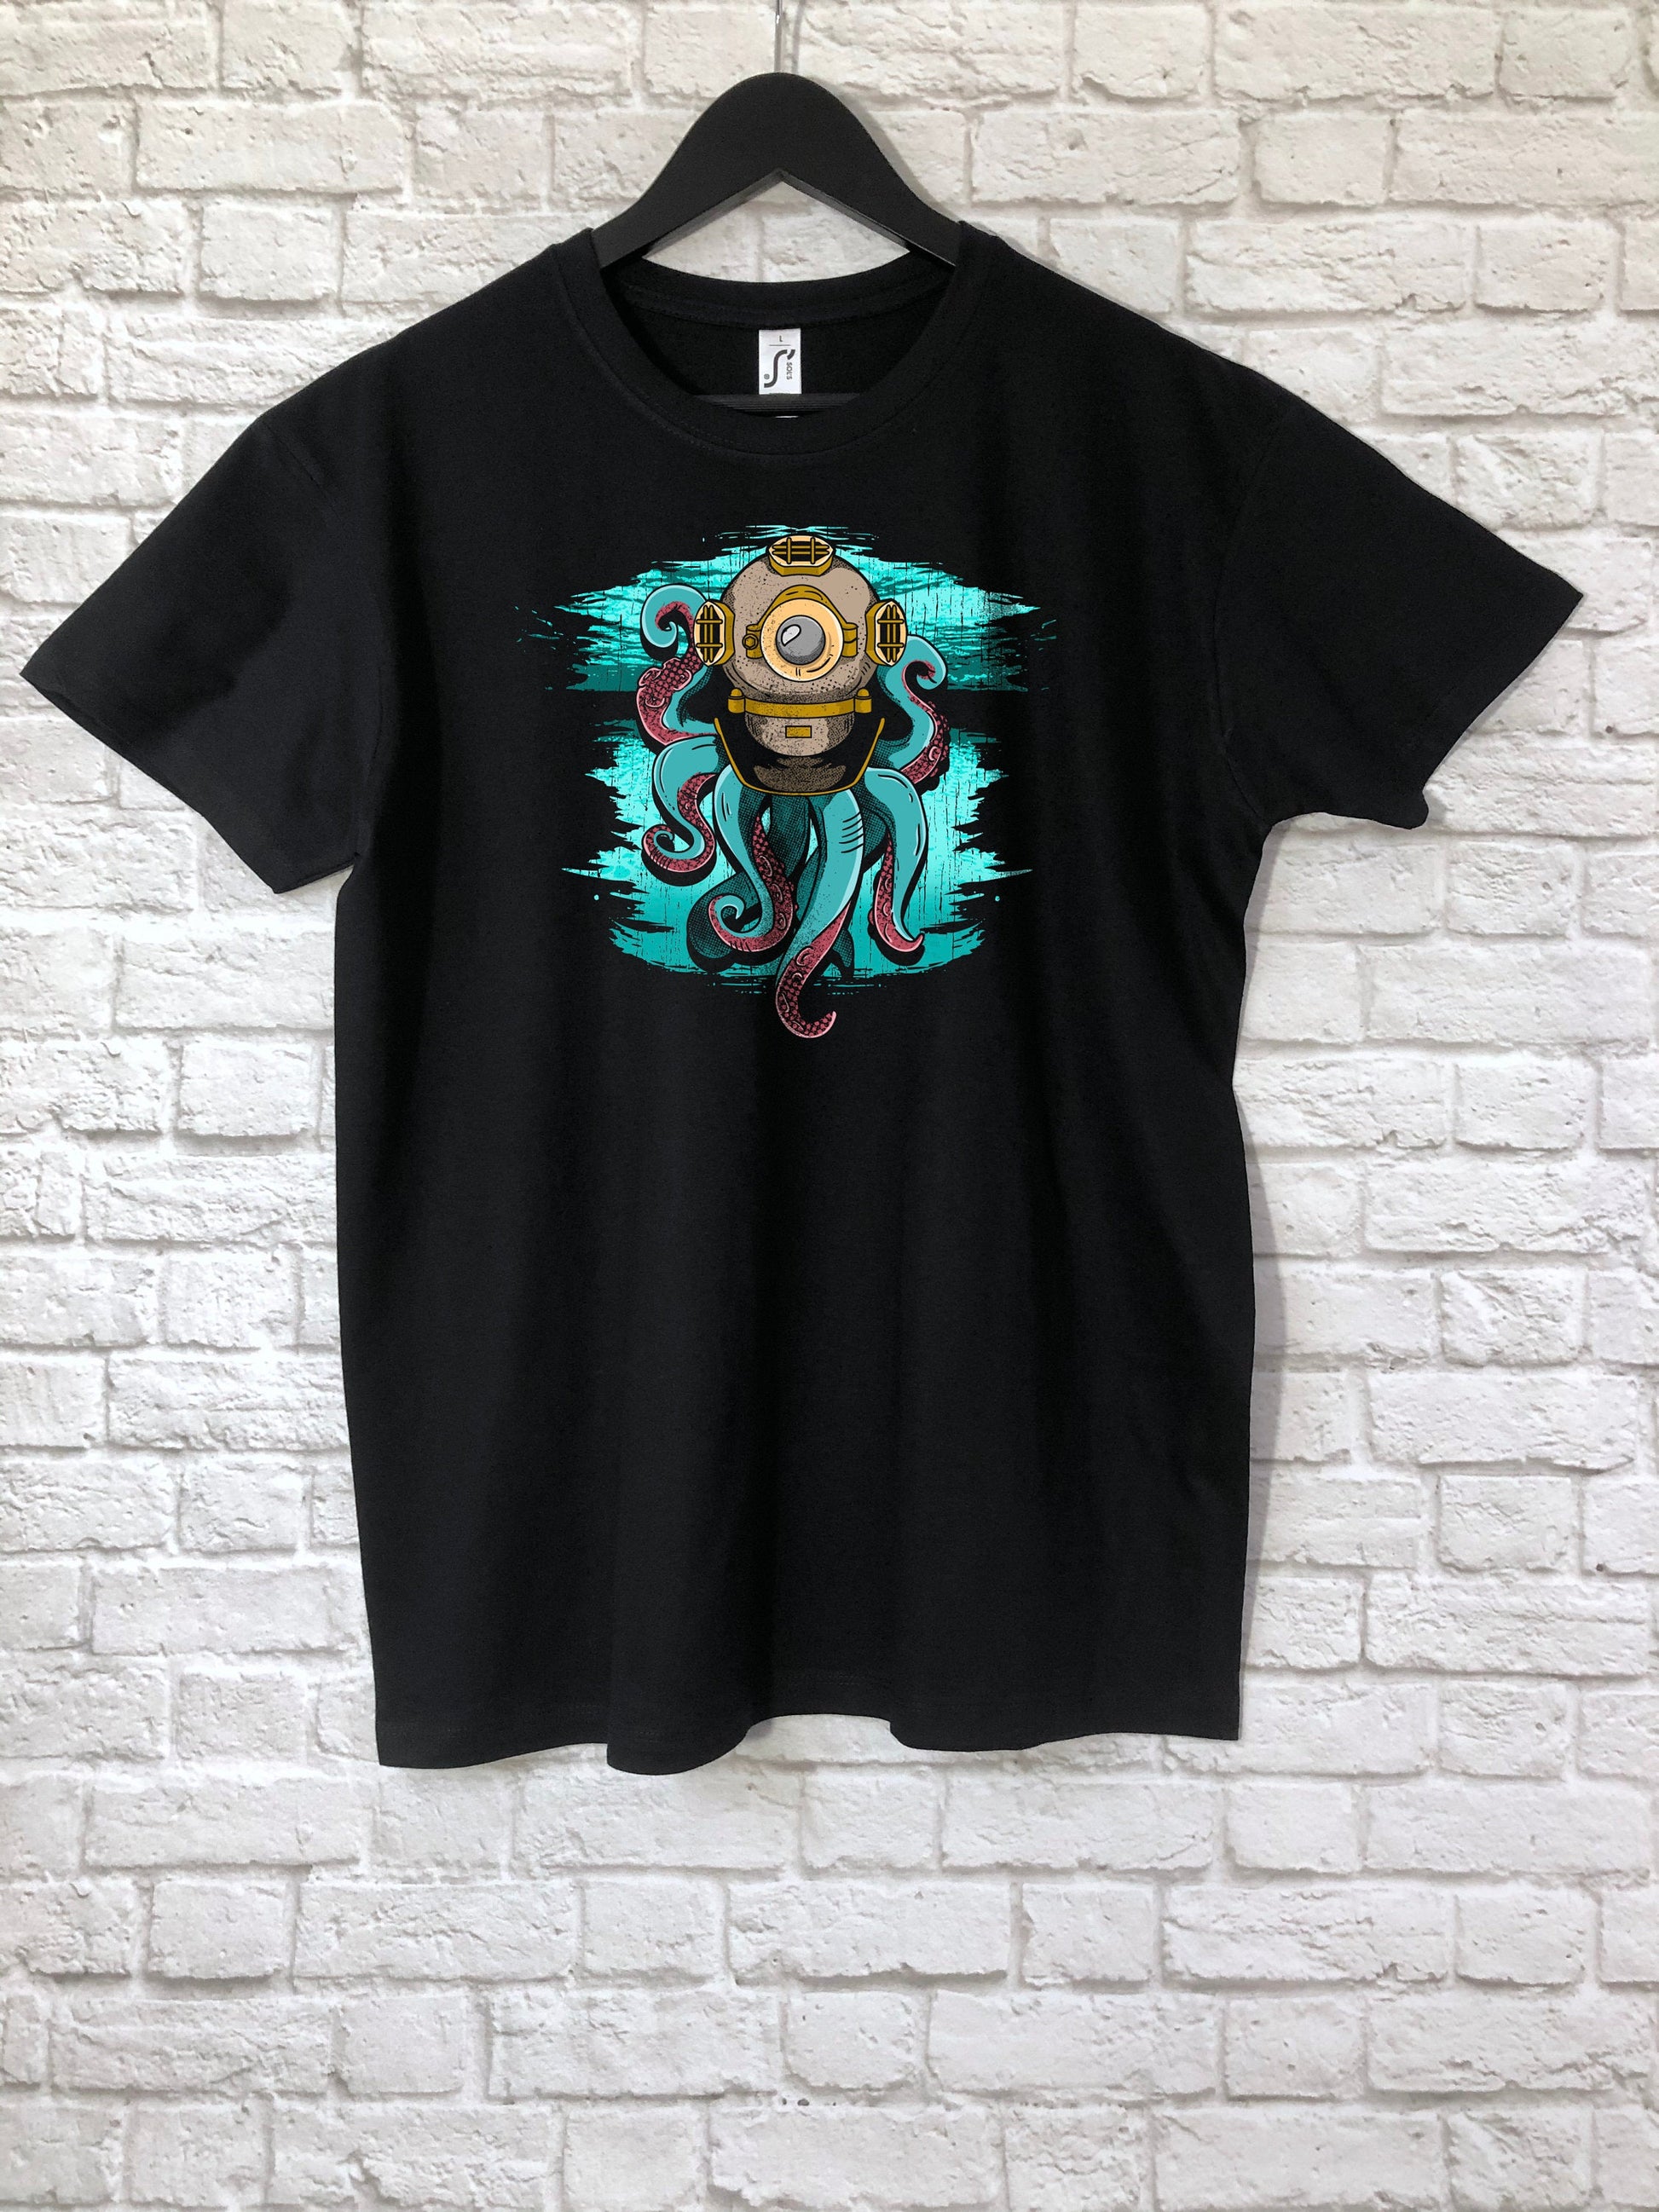 Steampunk Octopus T-Shirt, Kraken Scuba Diver Gift Tee Shirt Top